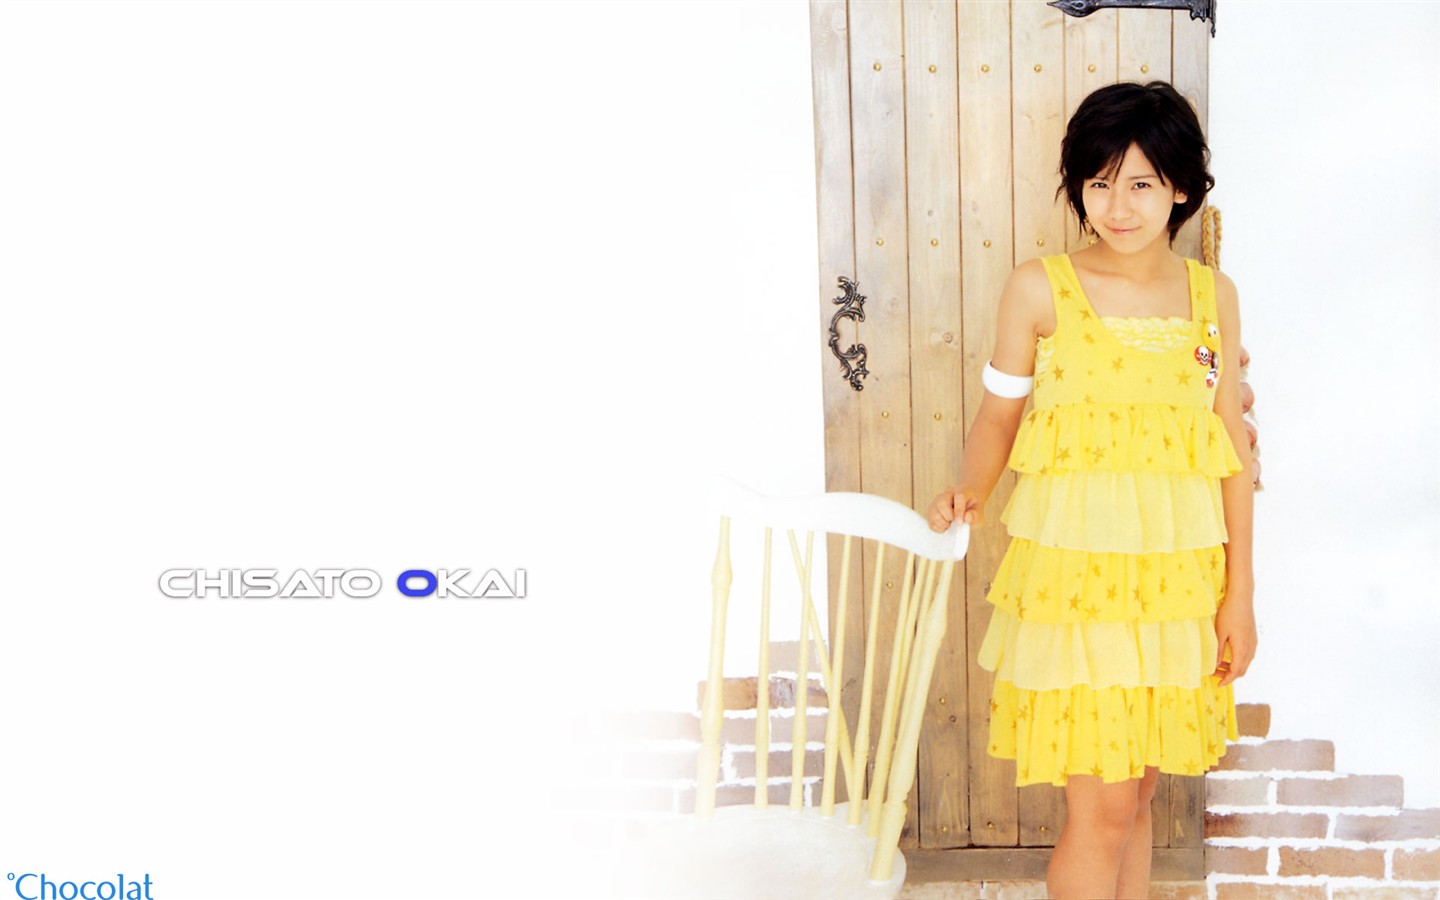 Cute belleza japonesa portafolio de fotos #6 - 1440x900